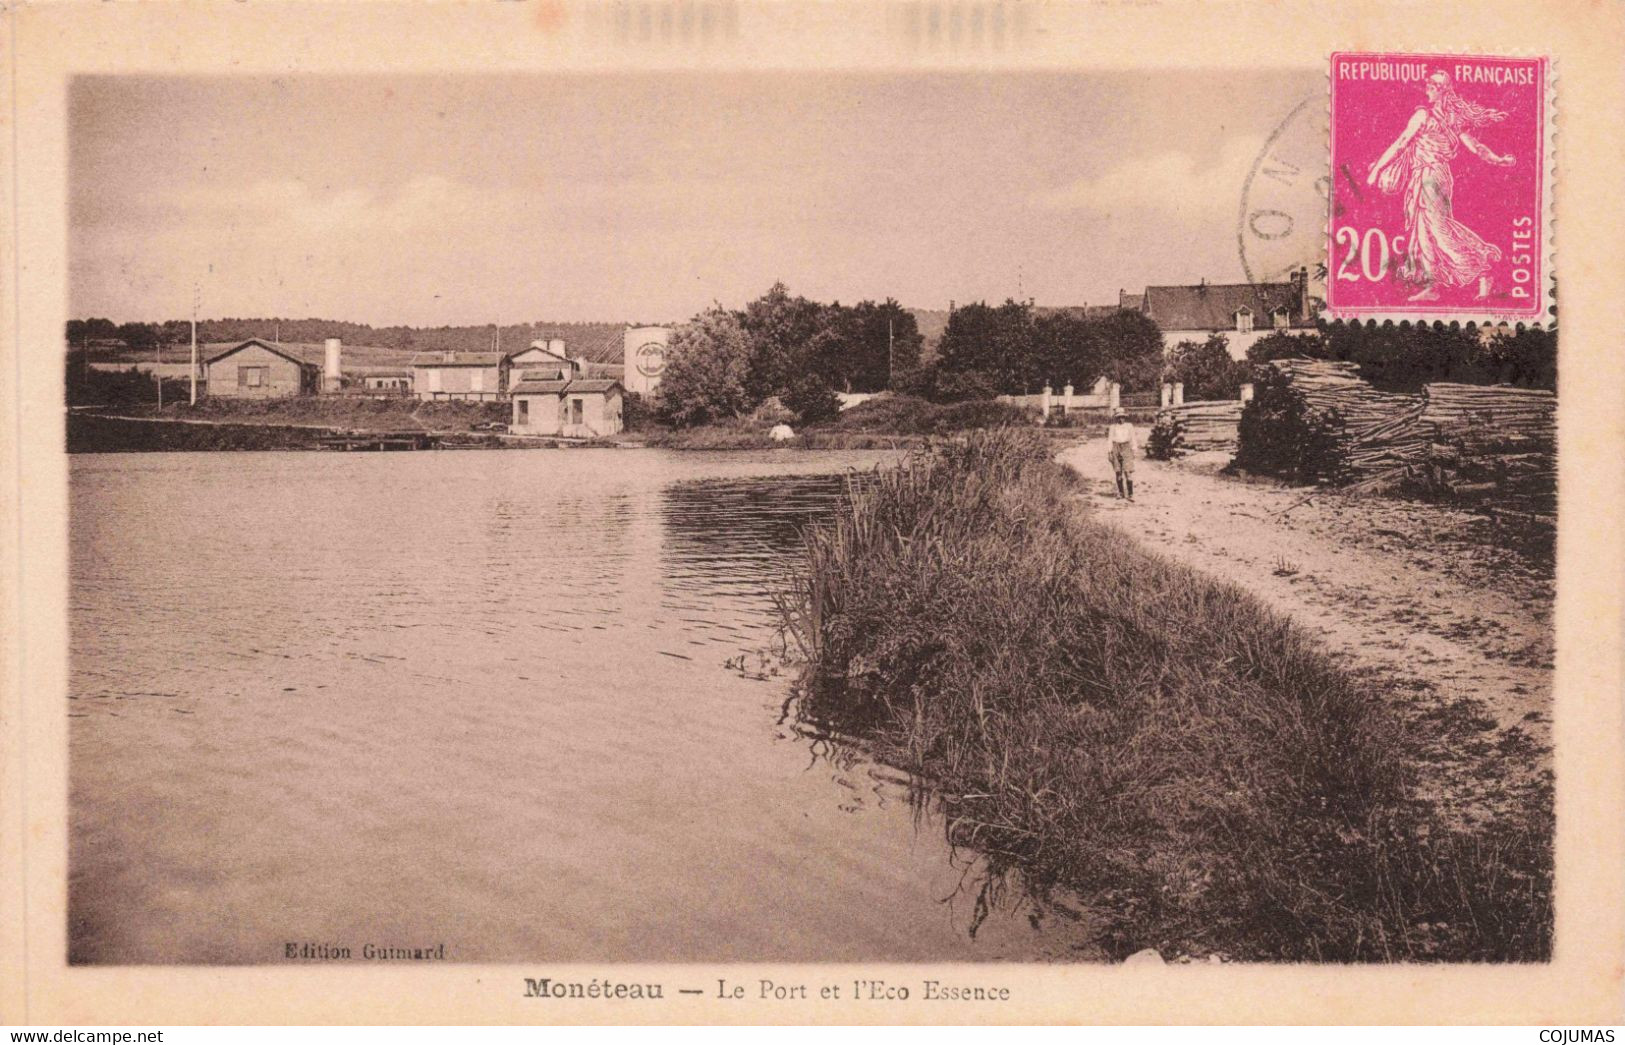 89 - MONETEAU - S10996 - Le Port De L'Eco Essence - L1 - Moneteau